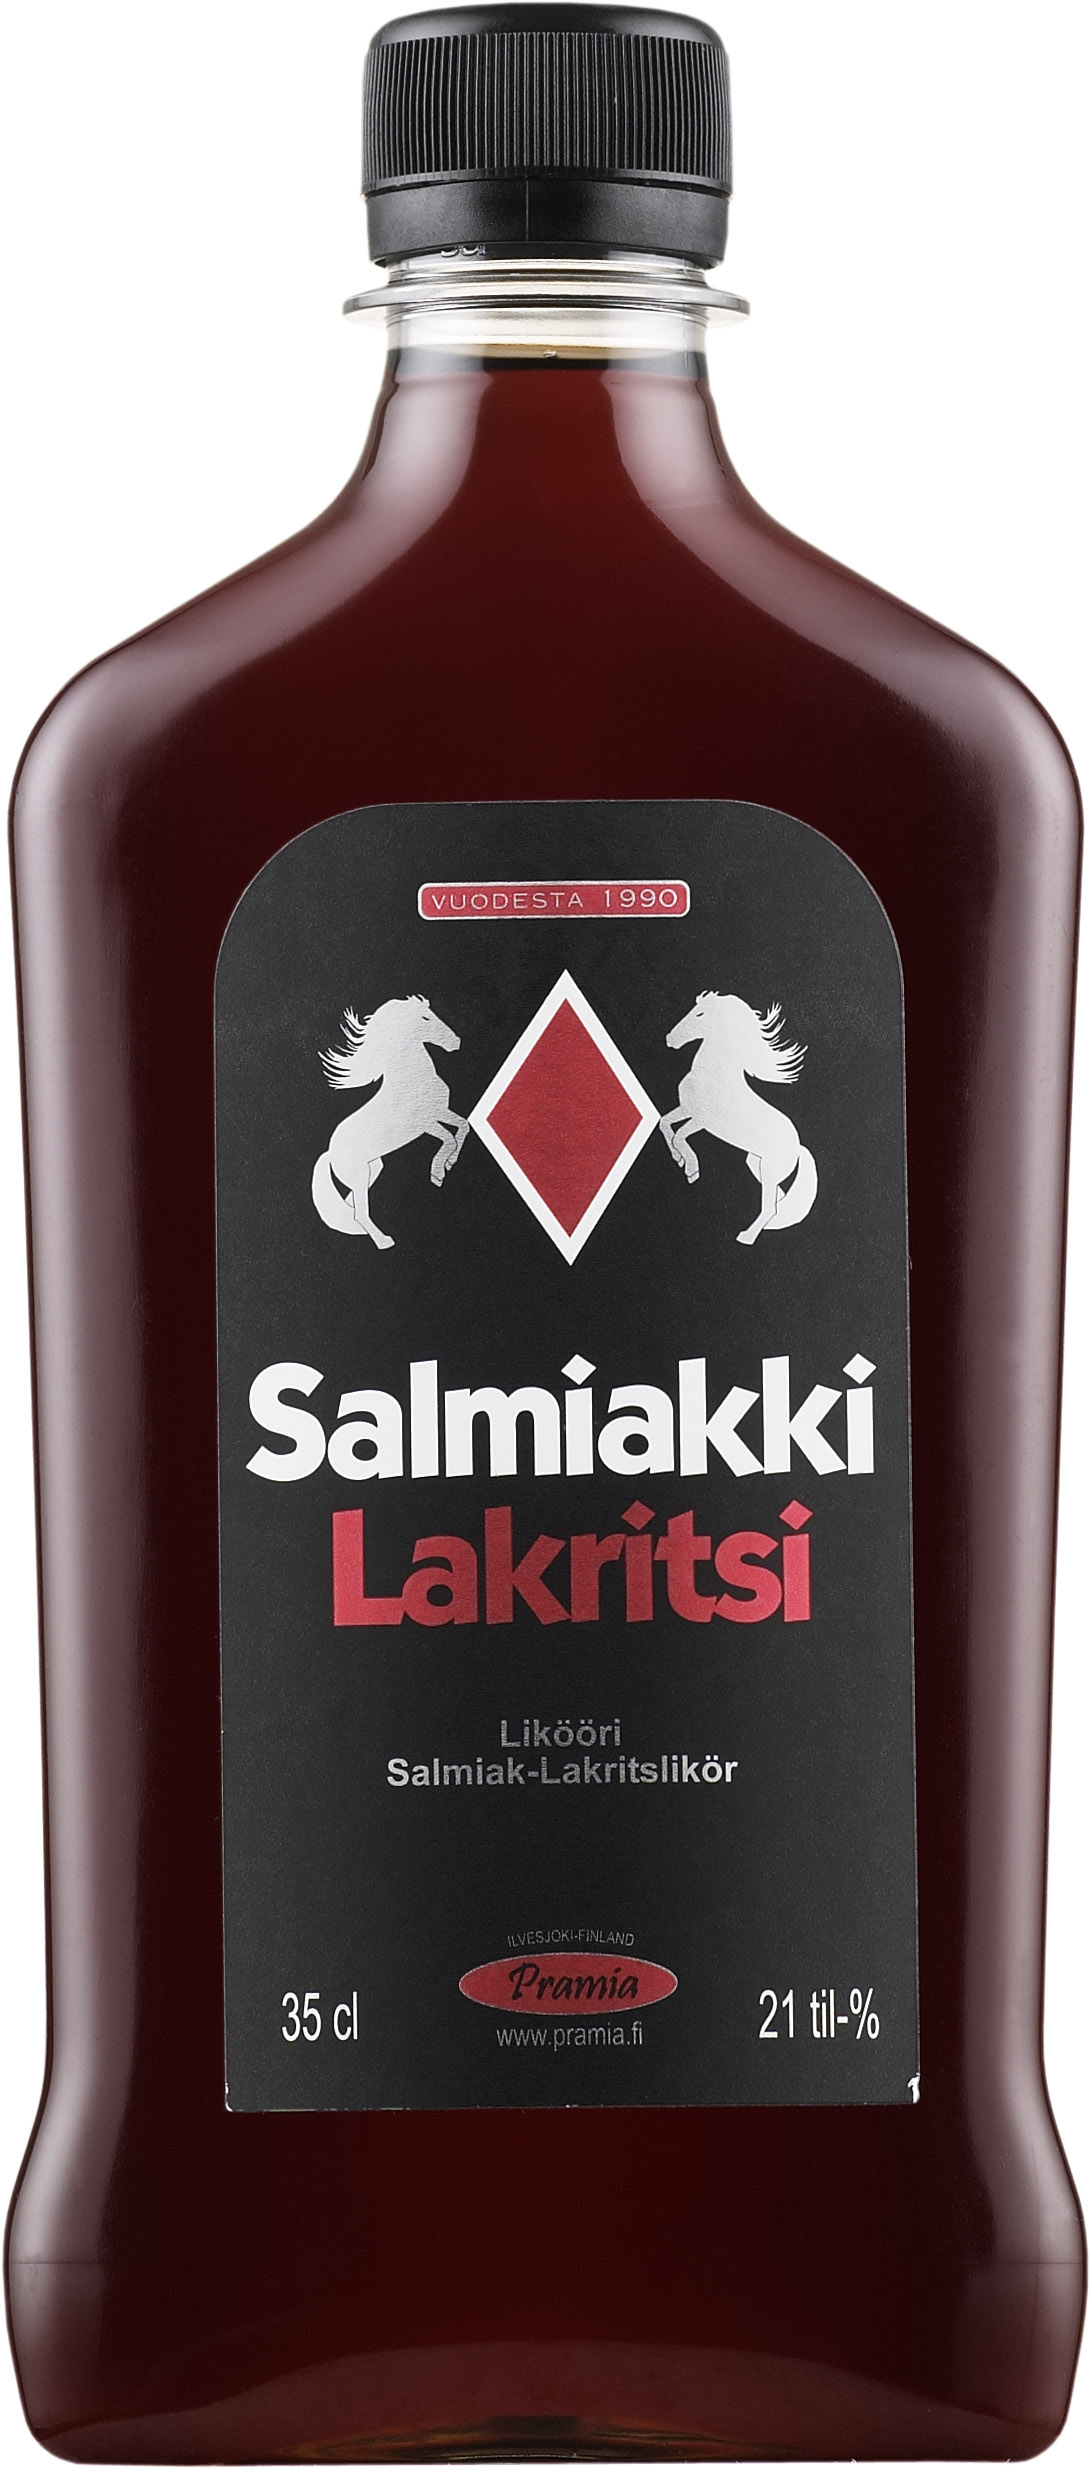 Pramia Salmiakki Lakritsi plastic bottle